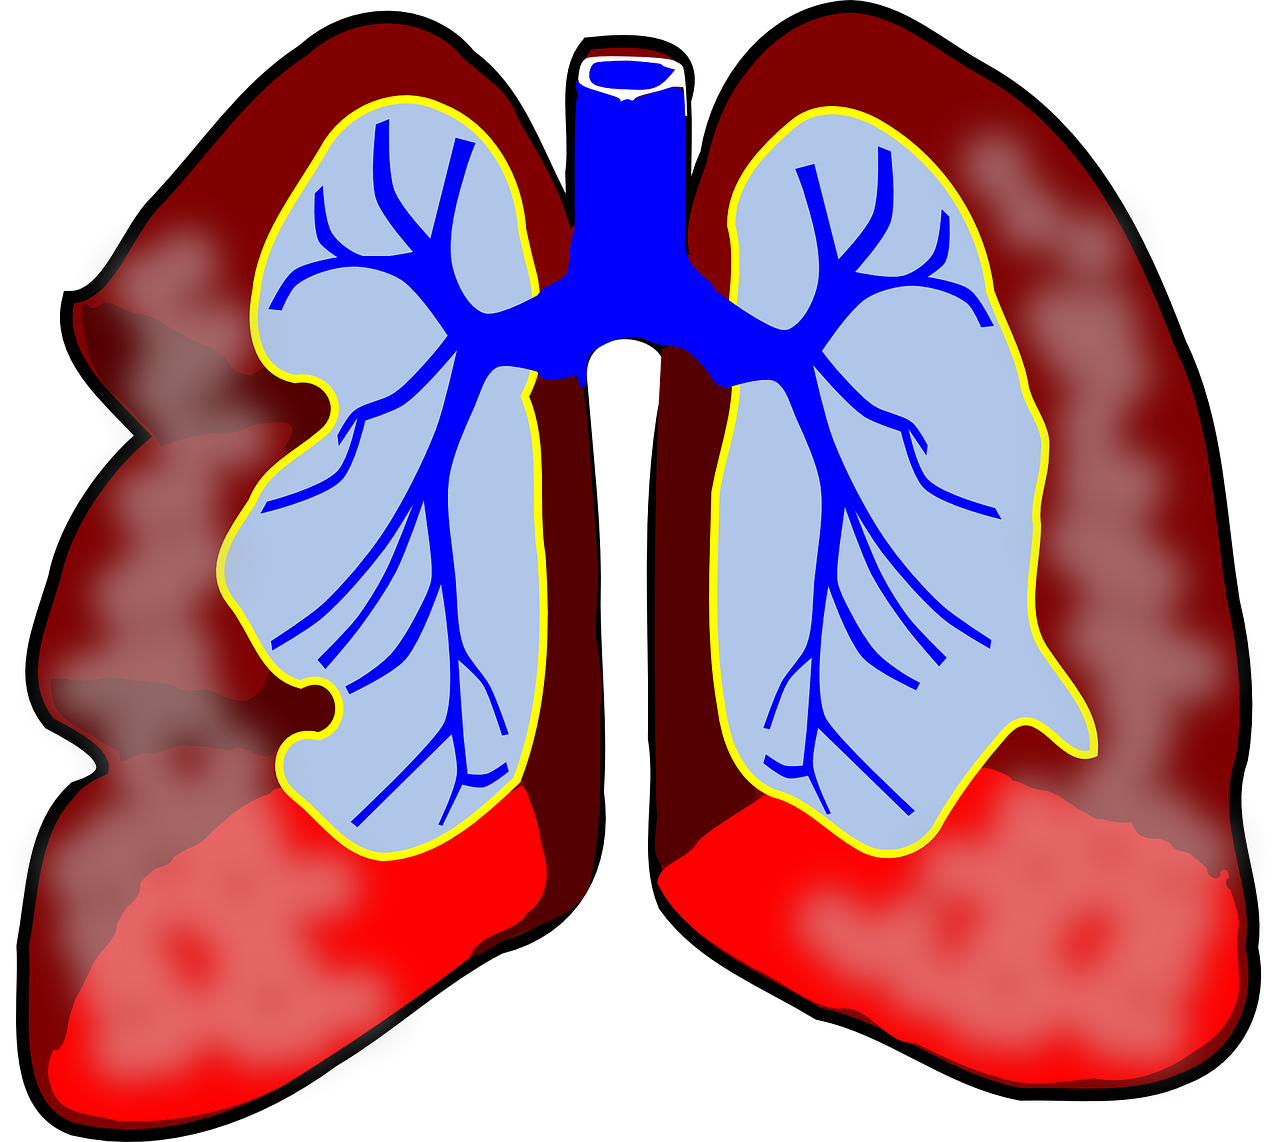 Tratament biologic pentru astmul sever, pe lista medicamentelor compensate